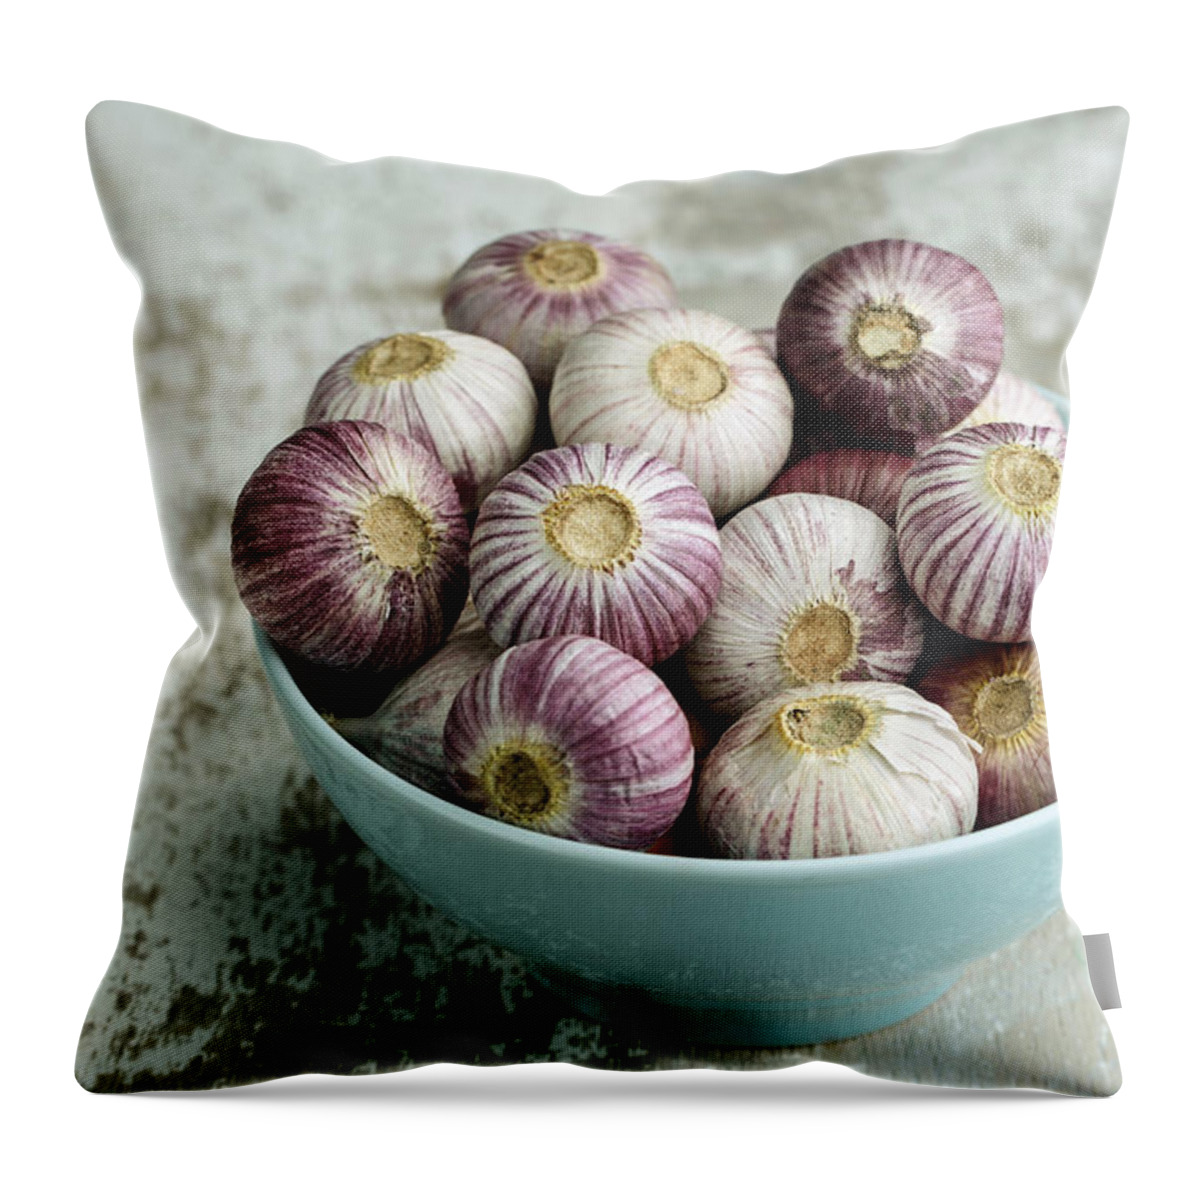 Garlic Throw Pillow featuring the photograph Garlic by Nailia Schwarz